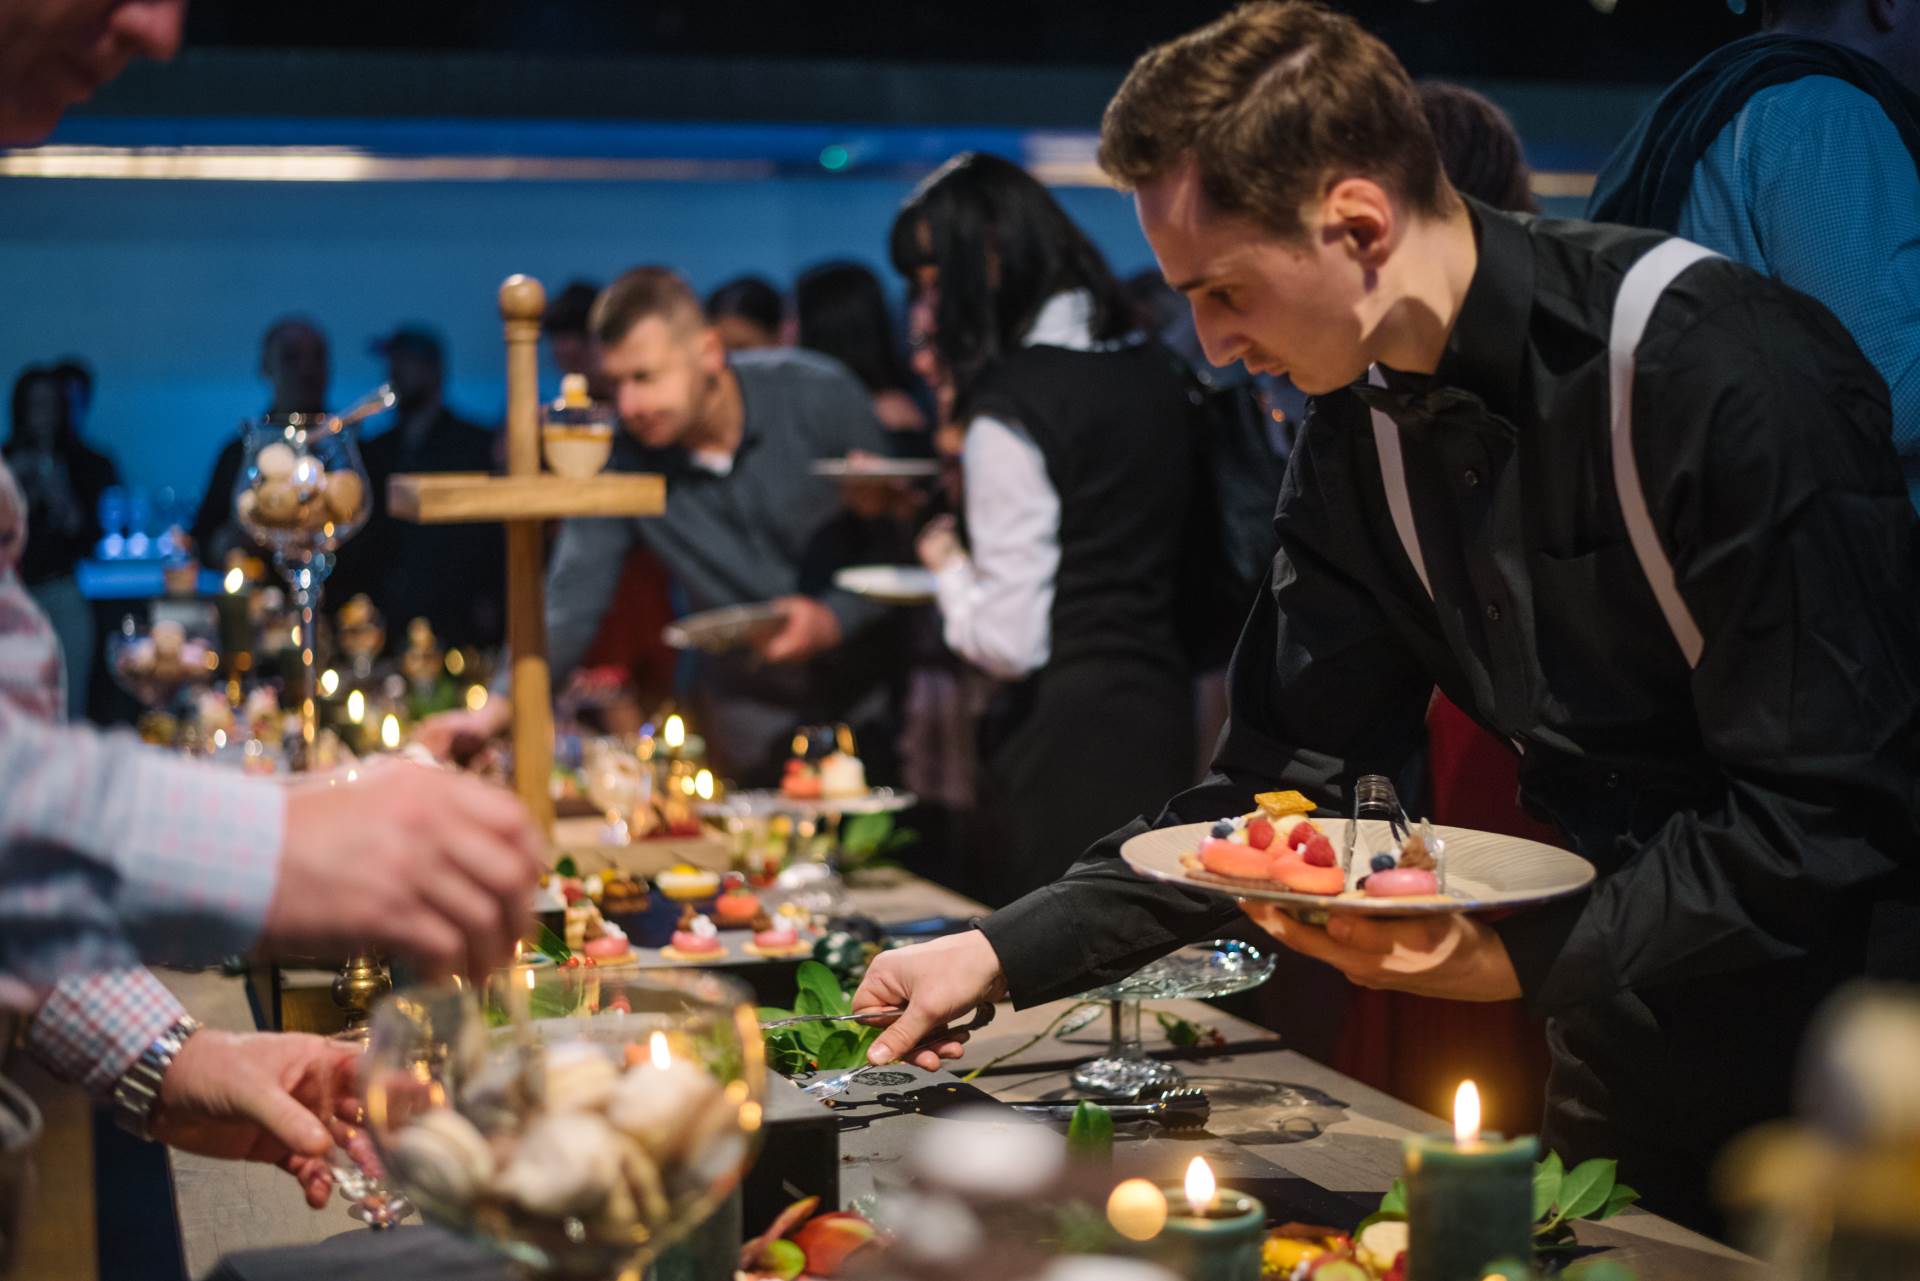 25 godina Zvona cateringa:  Obiteljska priča o ljubavi i hrani